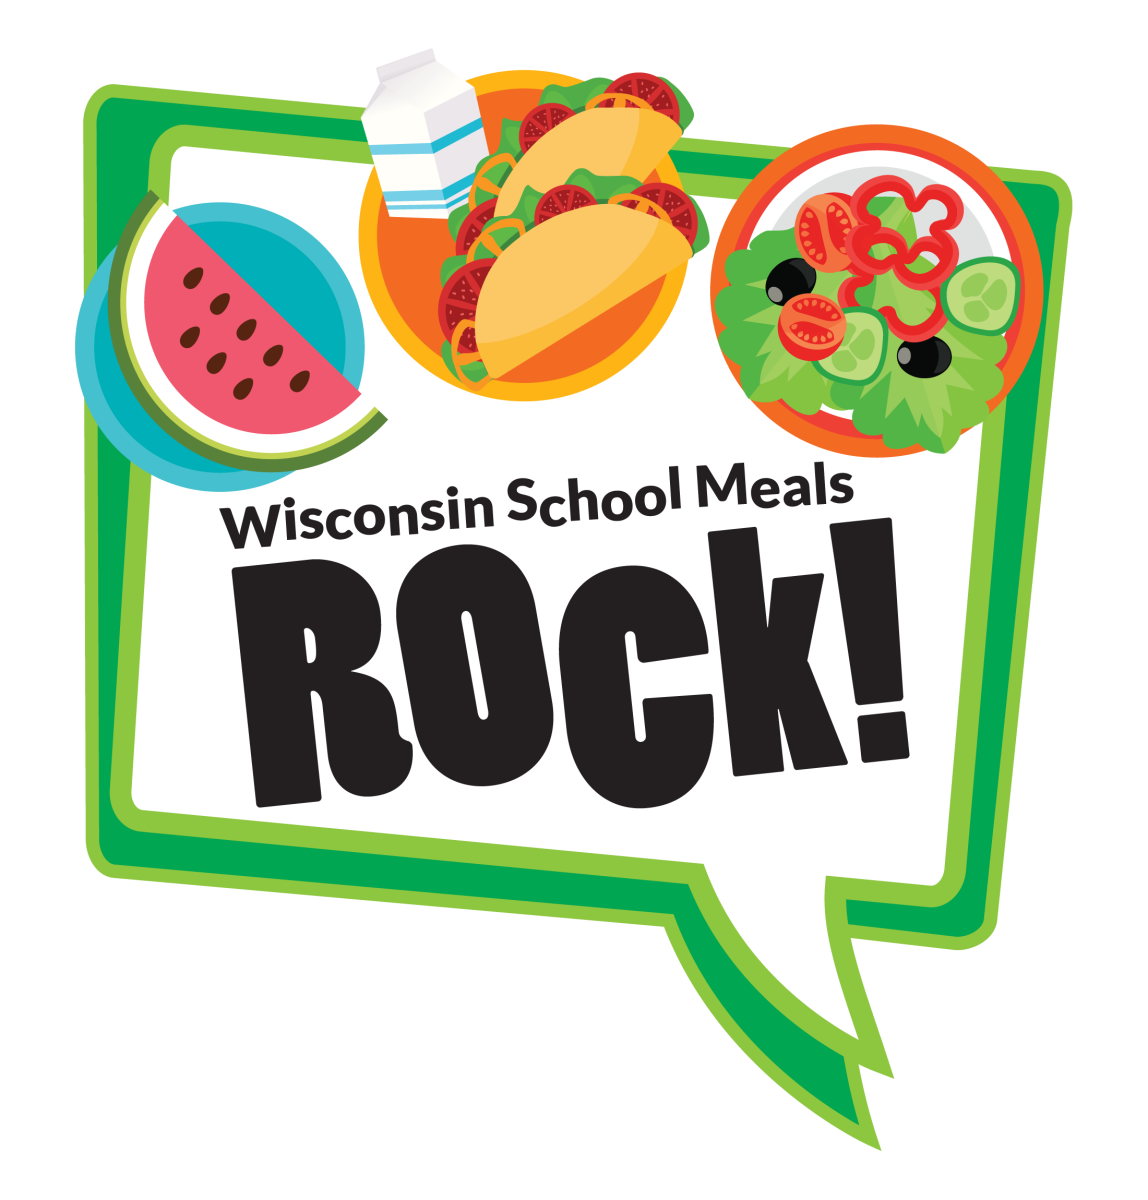 Wisconsin school meals rock logo